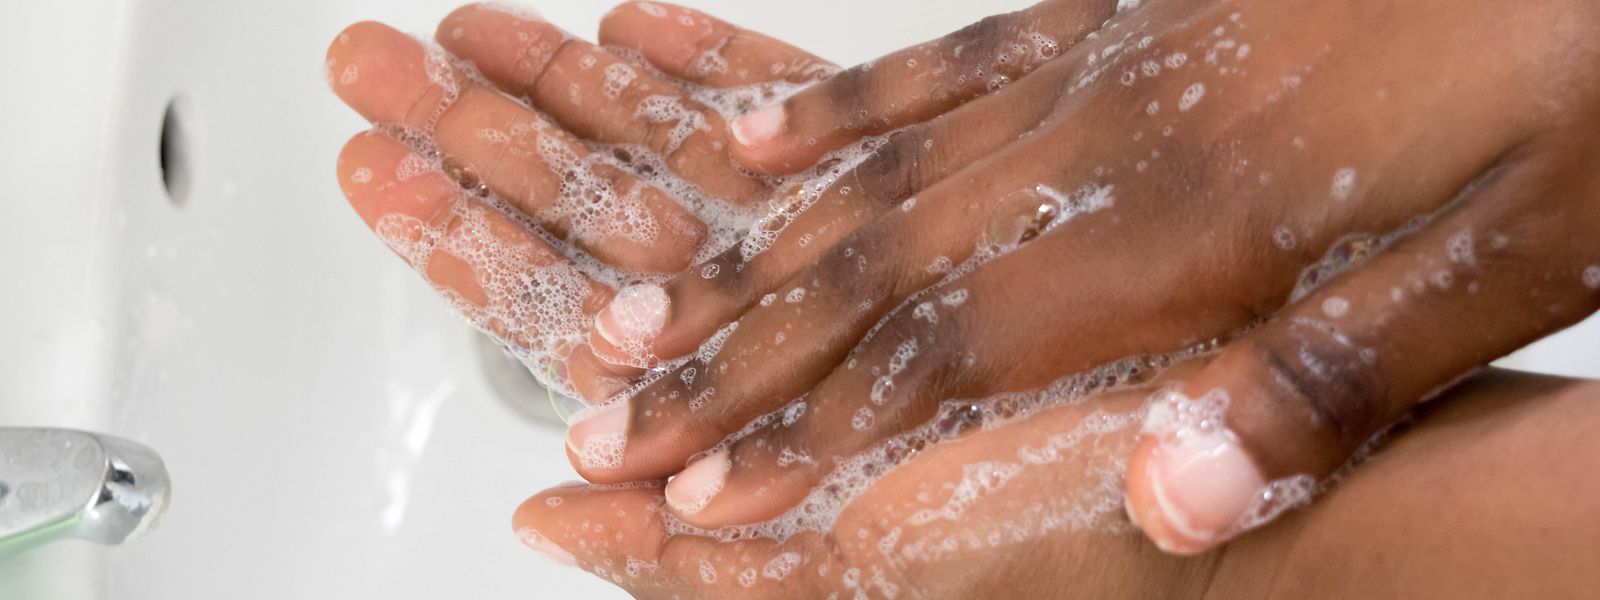 Sich die Hände mit Wasser und Seife zu waschen bleibt in Südafrika eine Herausforderung - insbesondere im Kampf gegen die Corona-Pandemie.